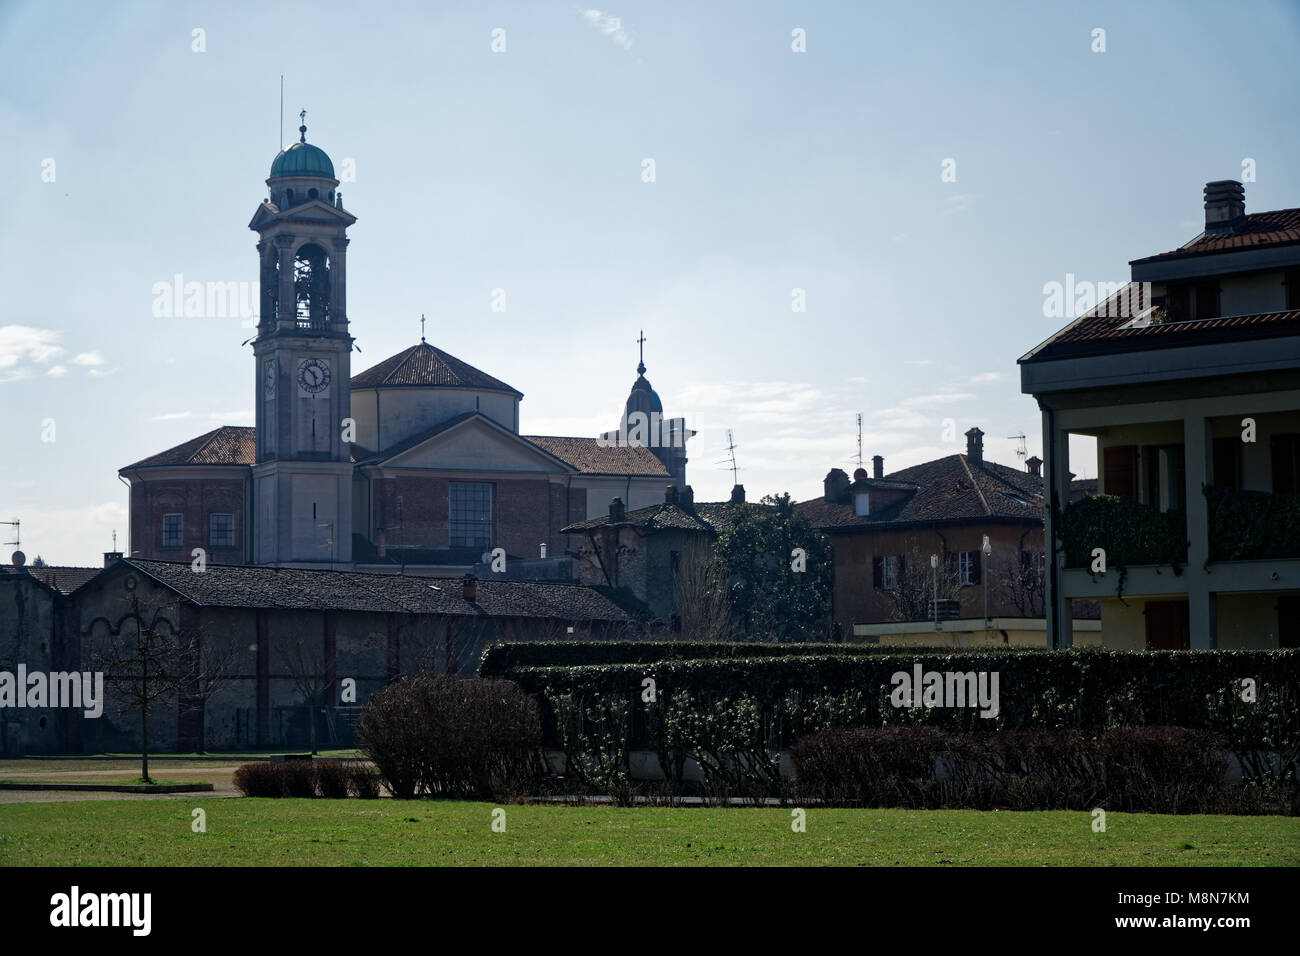 Katholische Kirche, Robecco sul Naviglio, Provinz Mailand, Italien, 13. März 2018: die alte katholische Kirche mit Glockenturm, Religion Hintergrund. Stockfoto